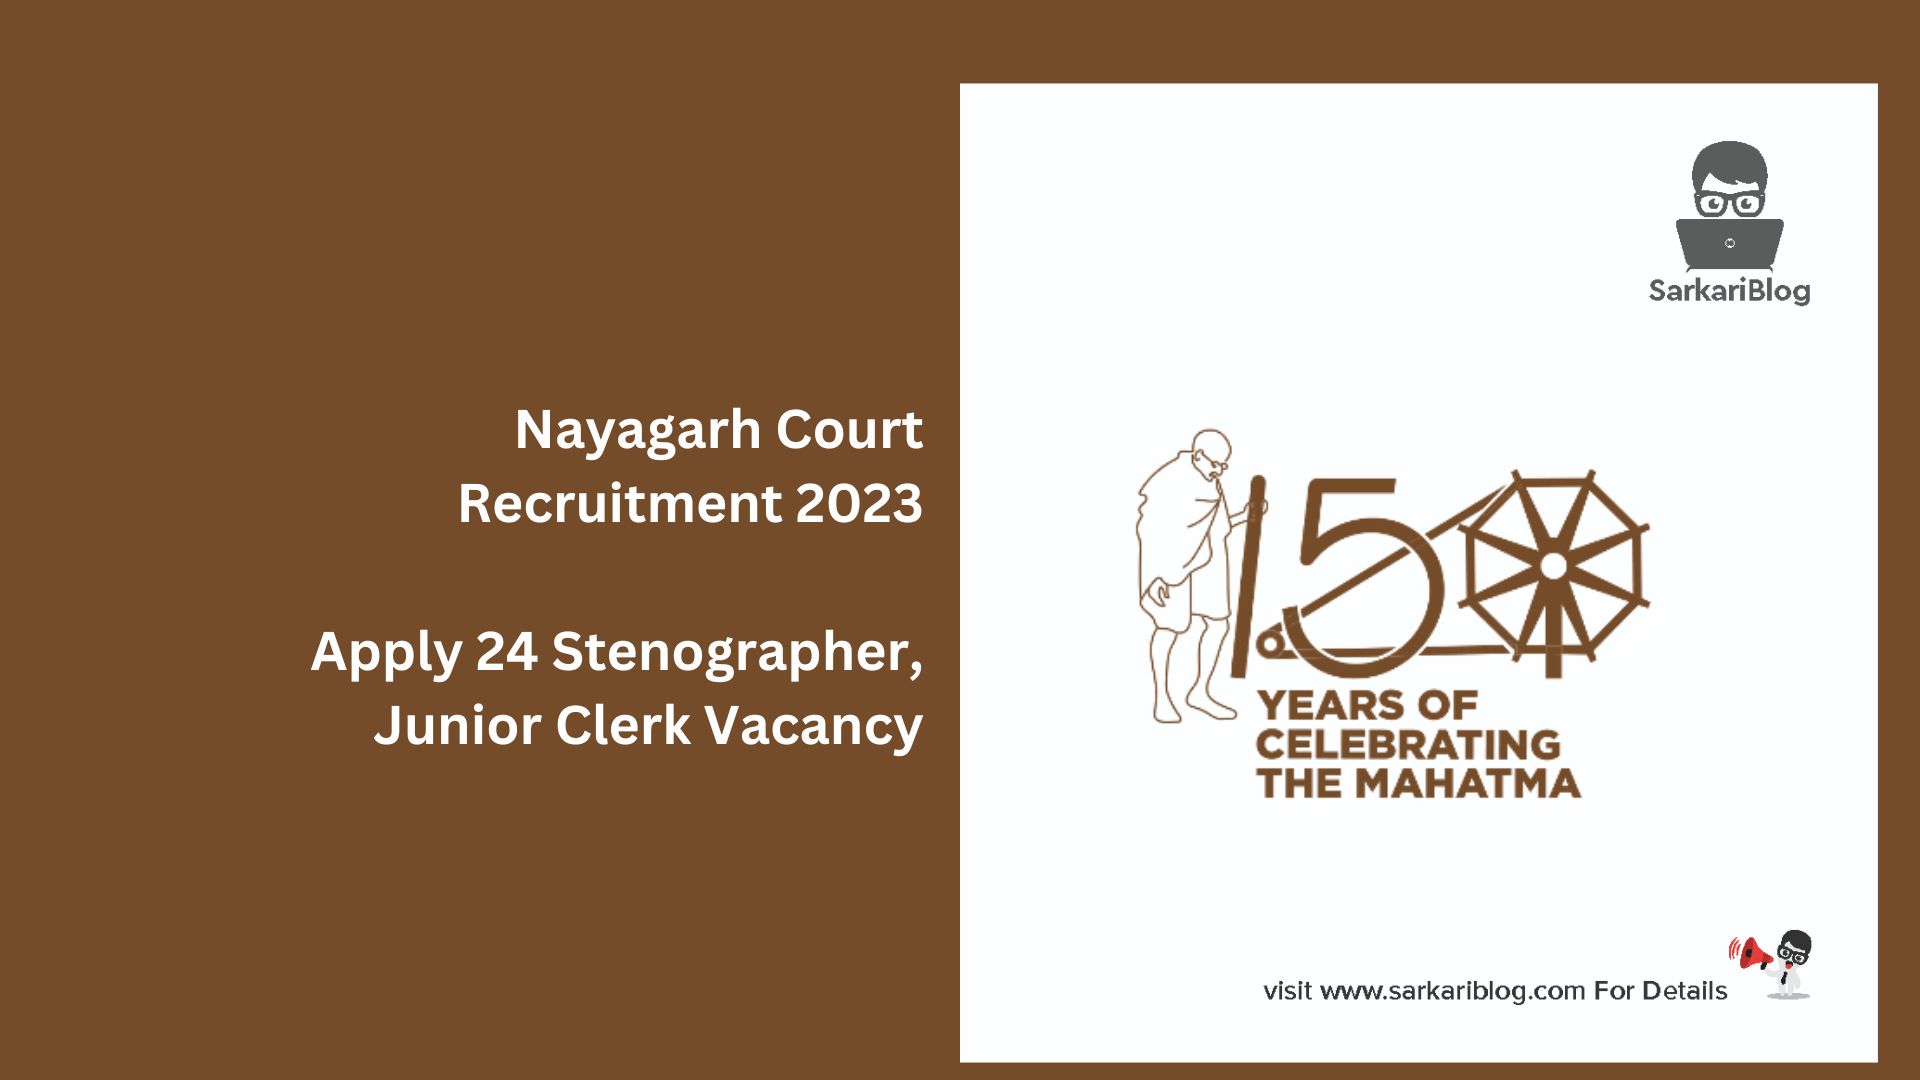 Nayagarh Court Recruitment 2023